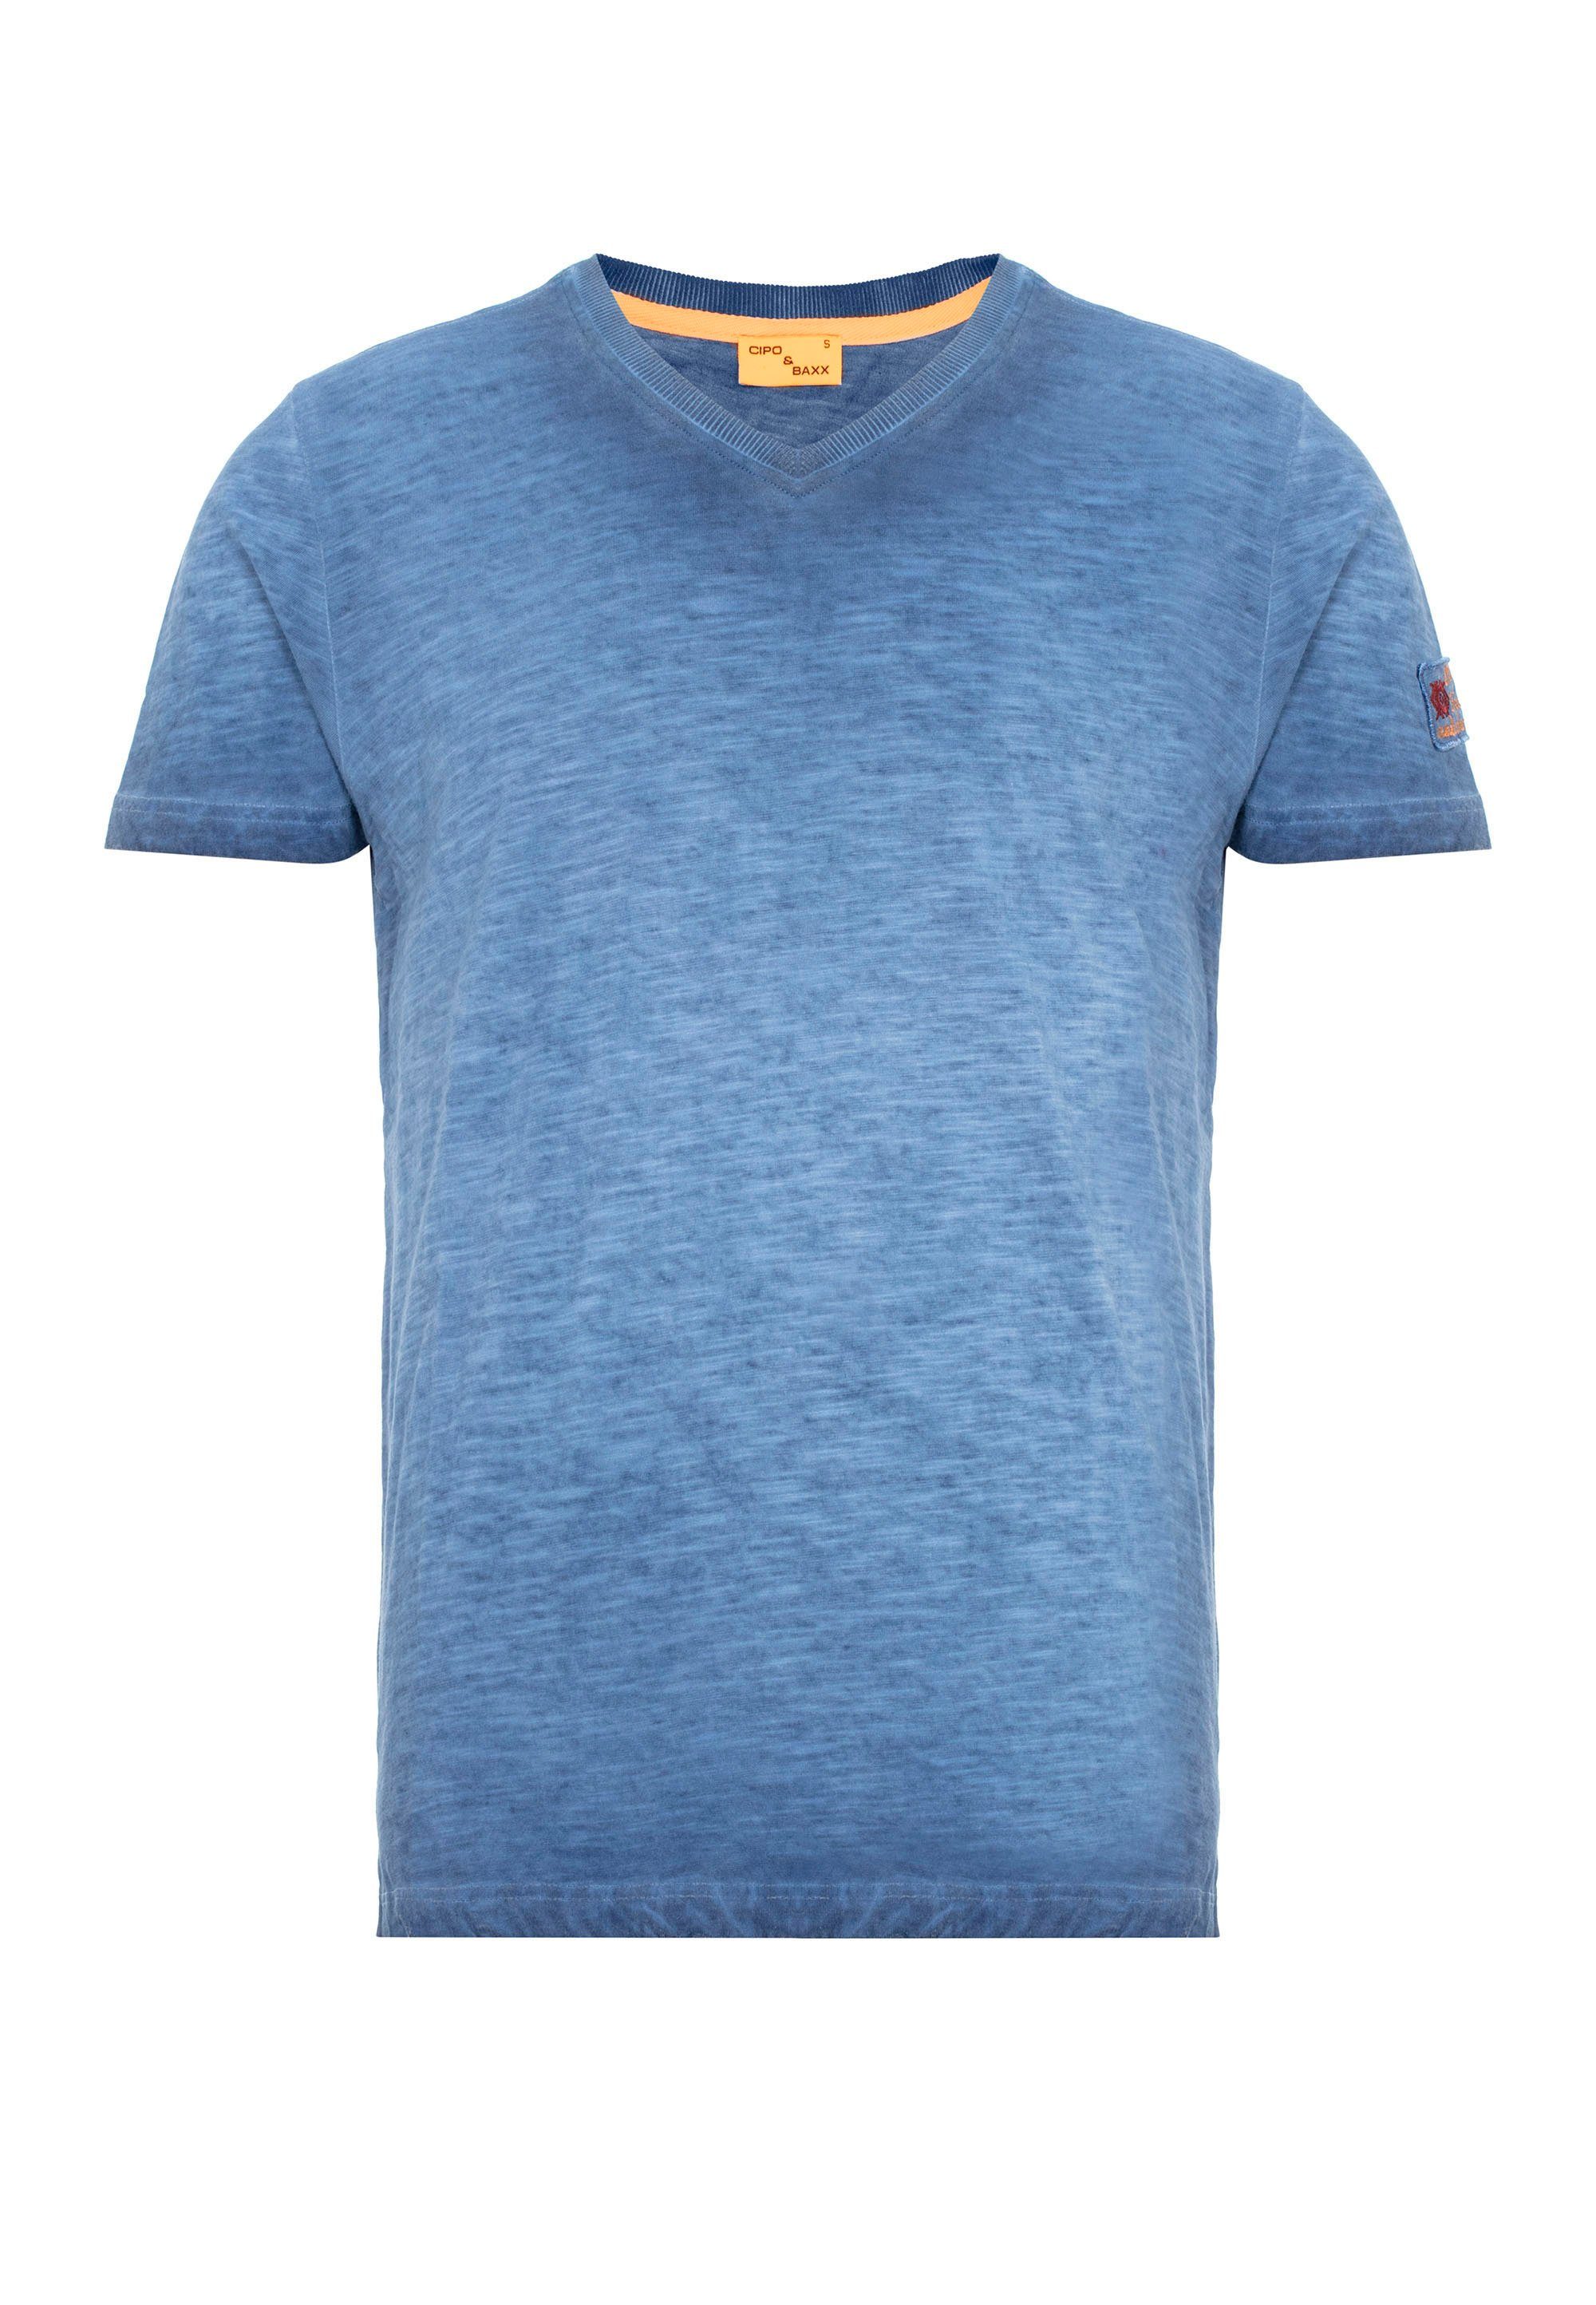 Cipo & kleinem indigo Logo-Patch T-Shirt mit Baxx